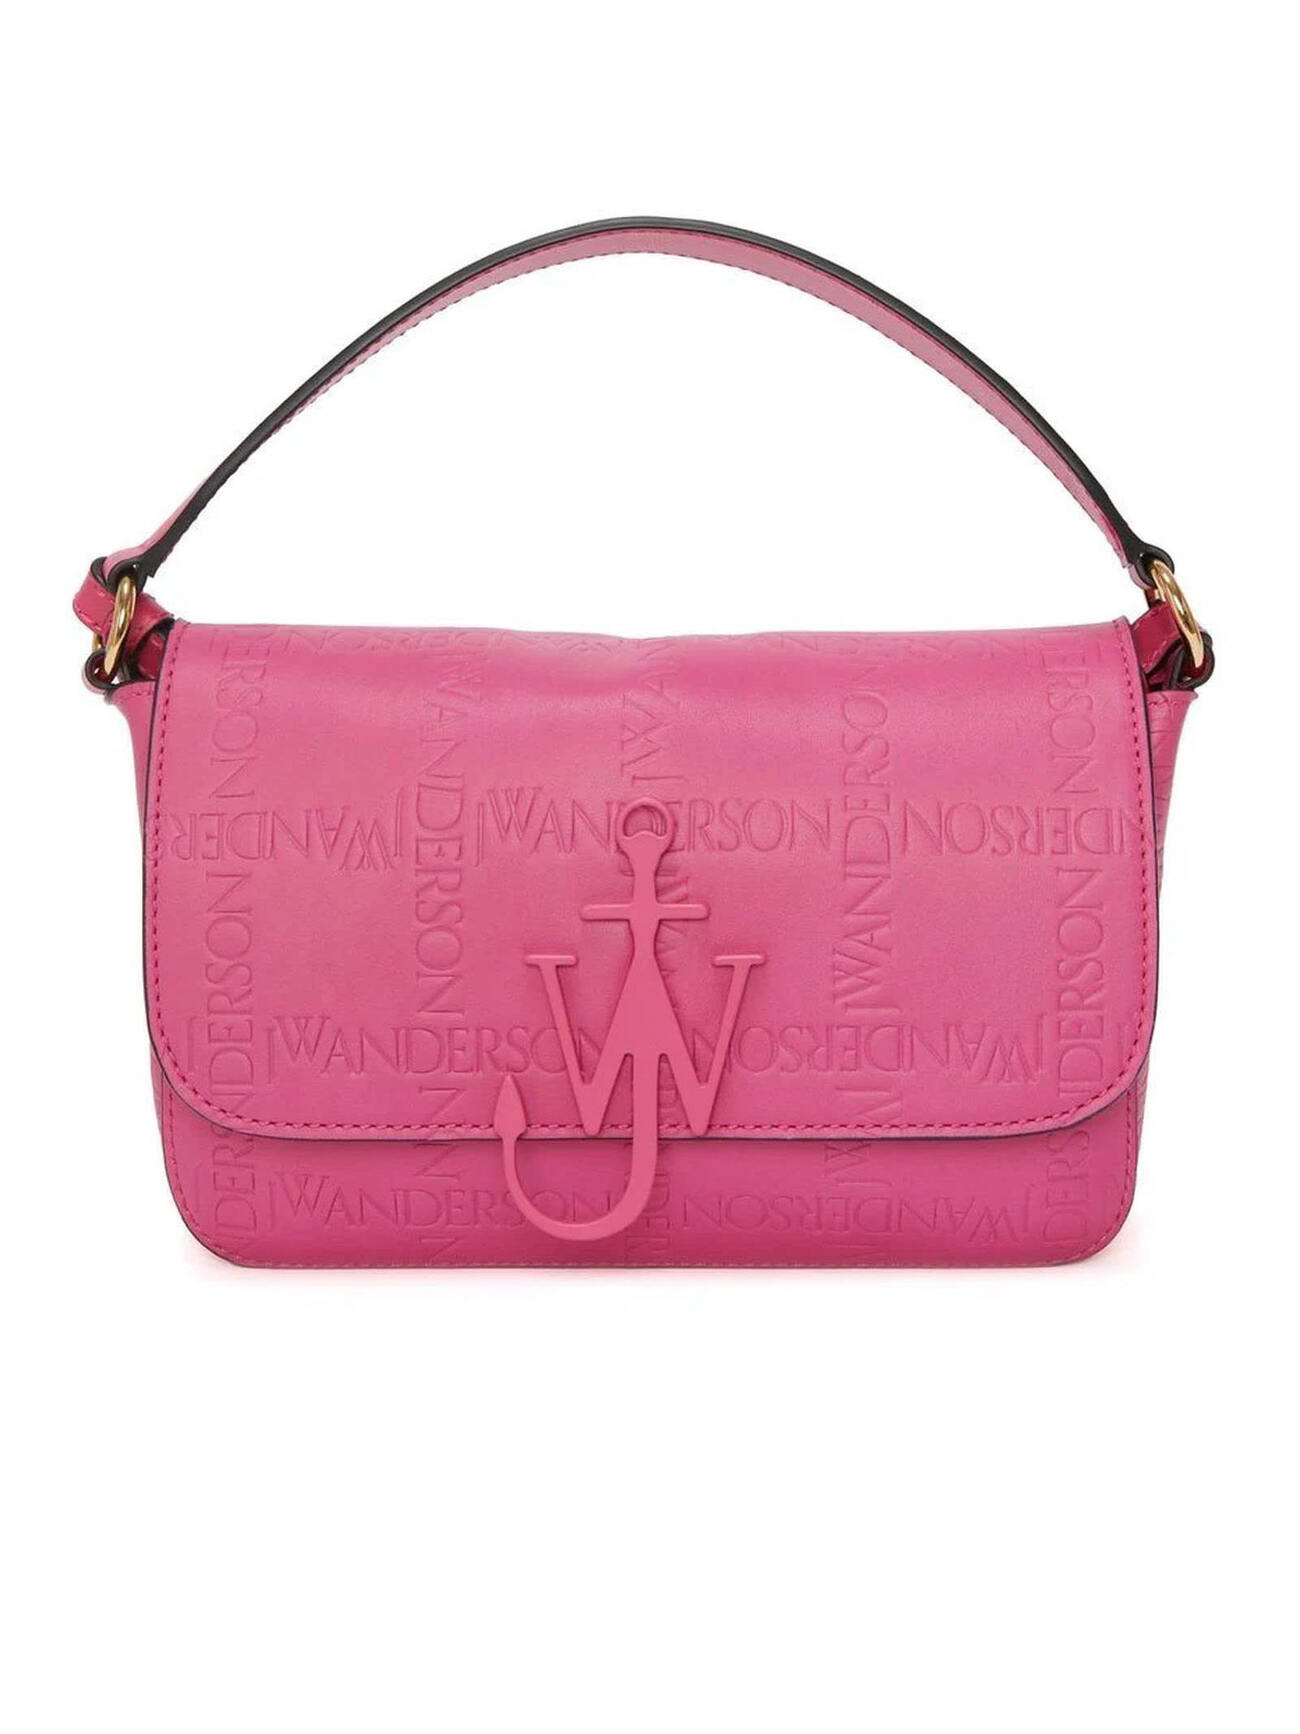 J.W. Anderson Pink Leather Shoulder Bag